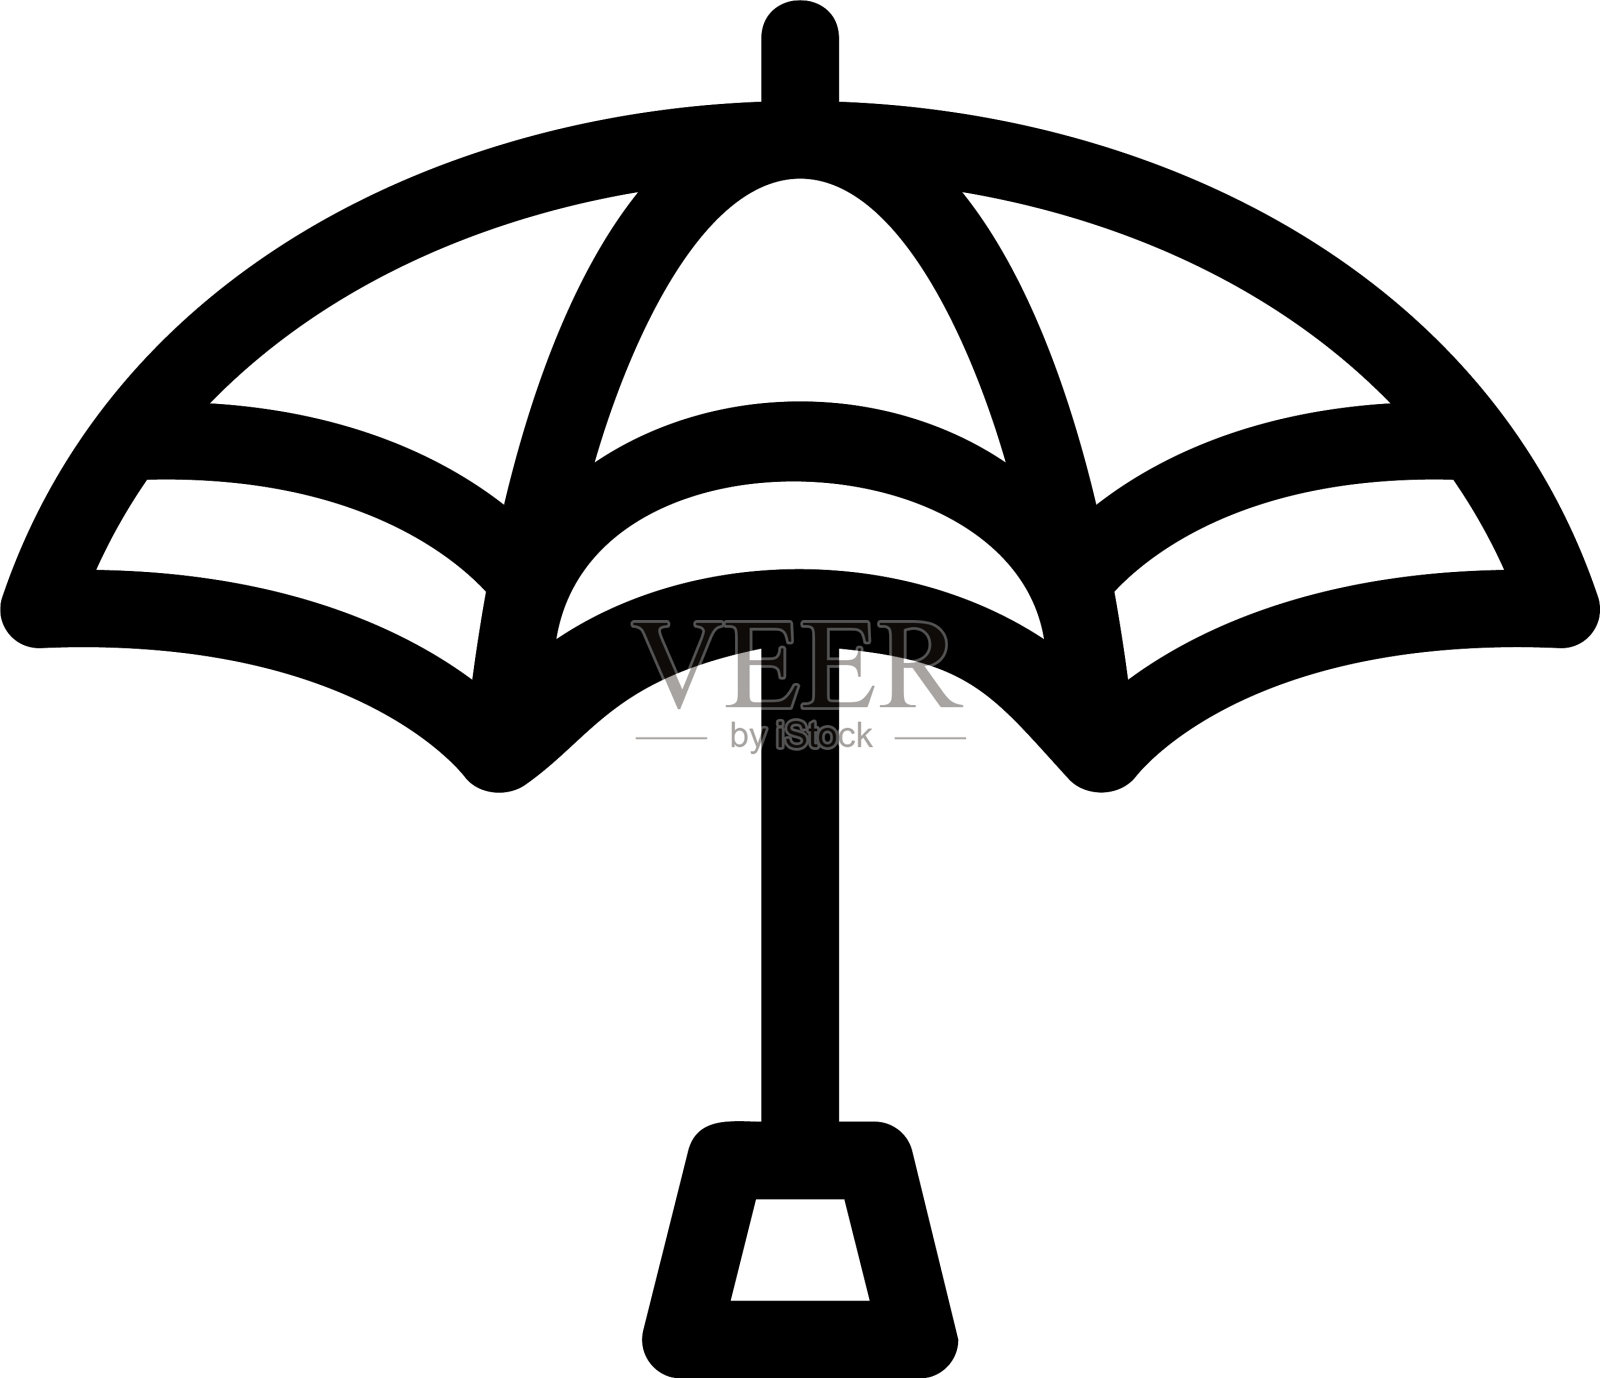 打开的雨伞 — 标志或象形图的矢量黑色剪影 雨伞 — 符号或图标 向量例证 - 插画 包括有 è¦†ç›, å¼€å¼: 184754749